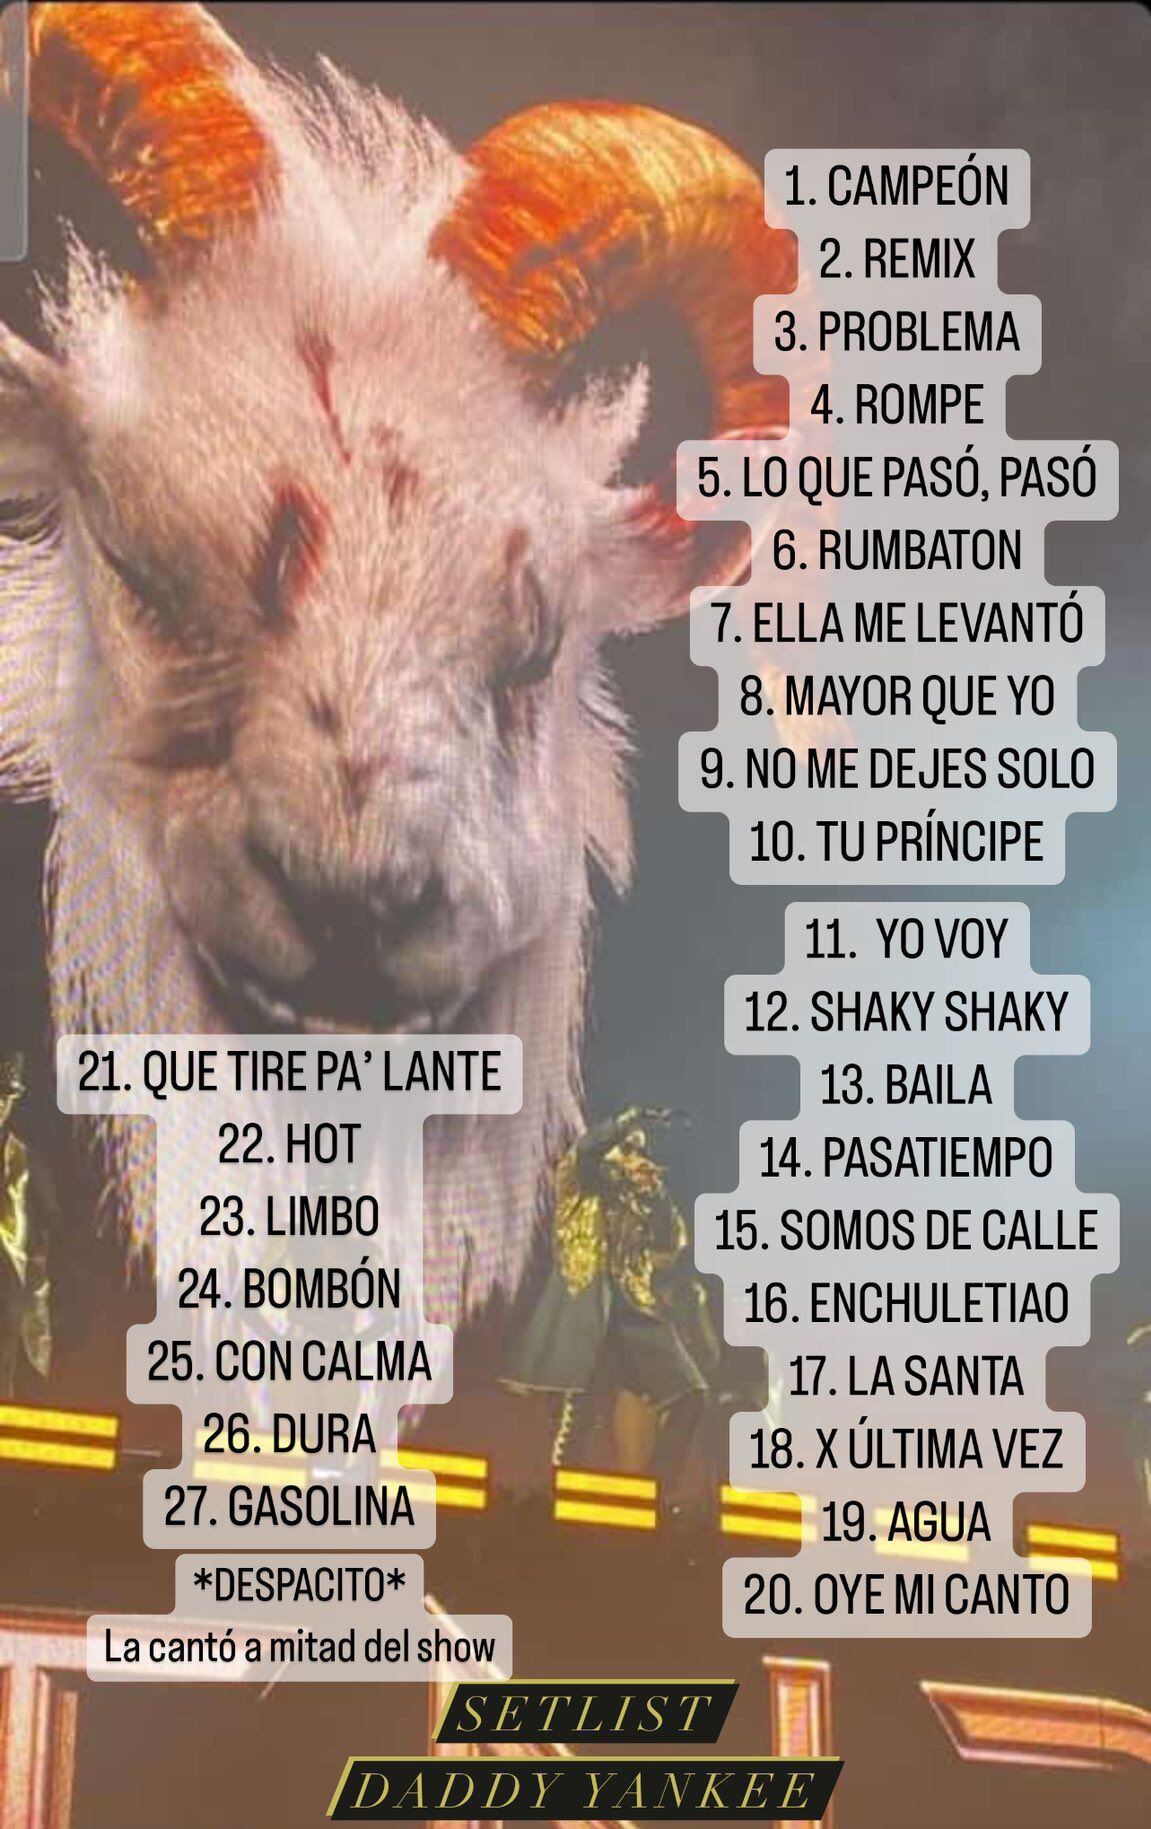 Setlist de Daddy Yankee para su concierto en el Foro Sol